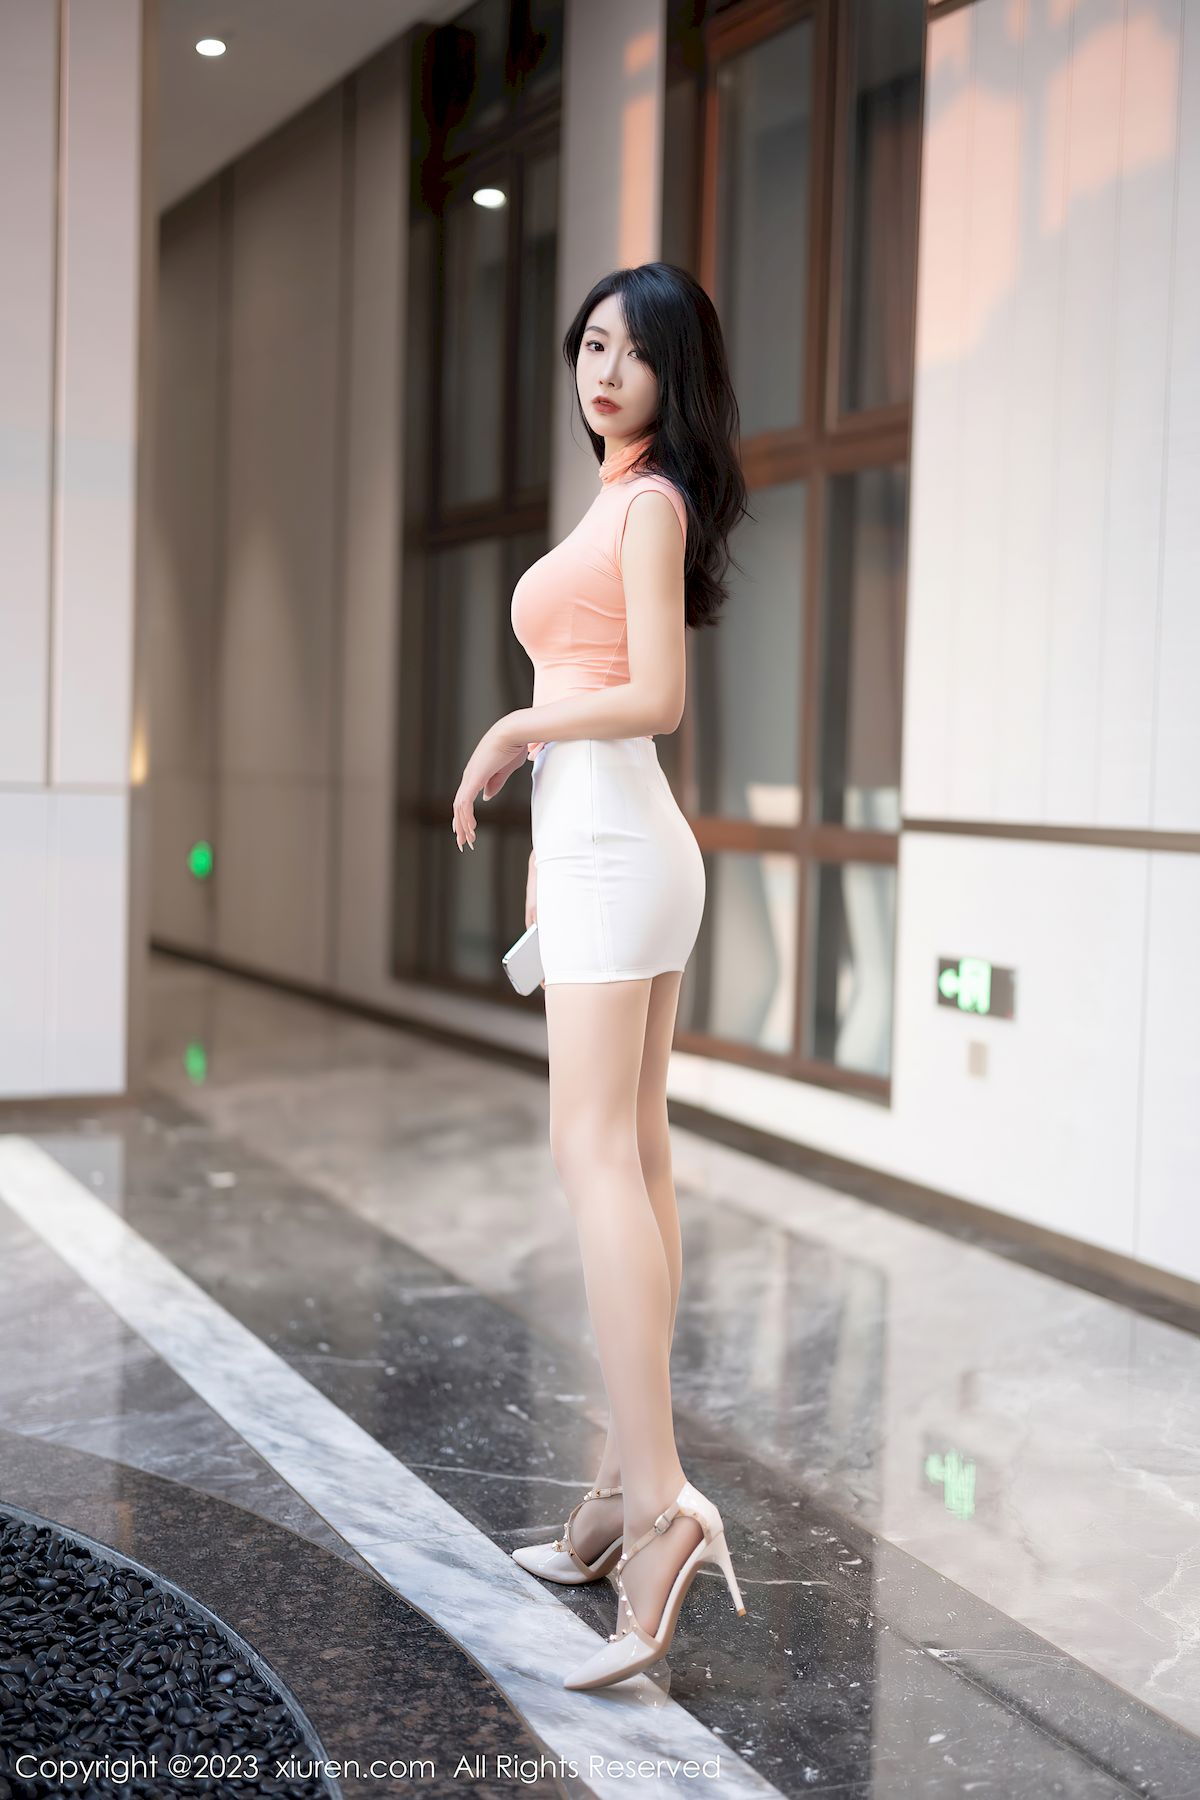 苏苏阿淡红色上衣搭配白色短裙性感写真